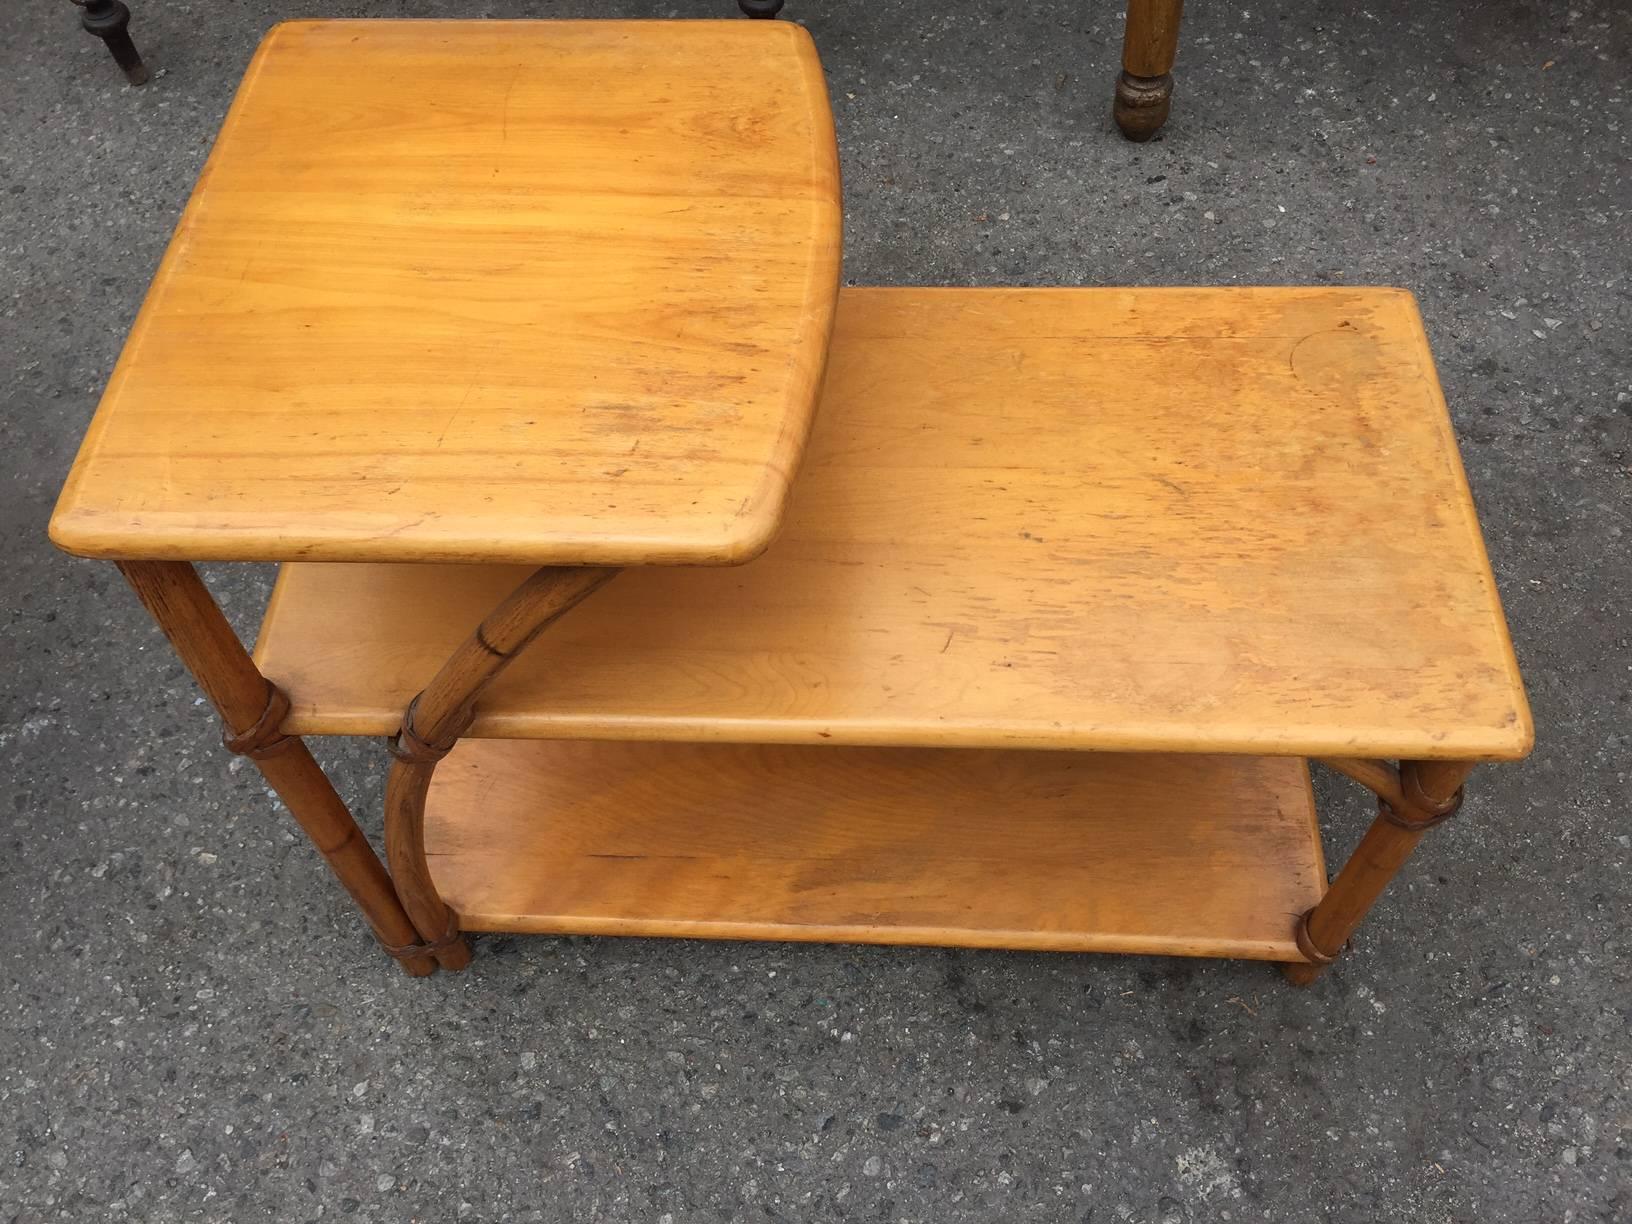 Pair of vintage Heywood-Wakefield side tables, American, mid-20th century.
Measures: 14